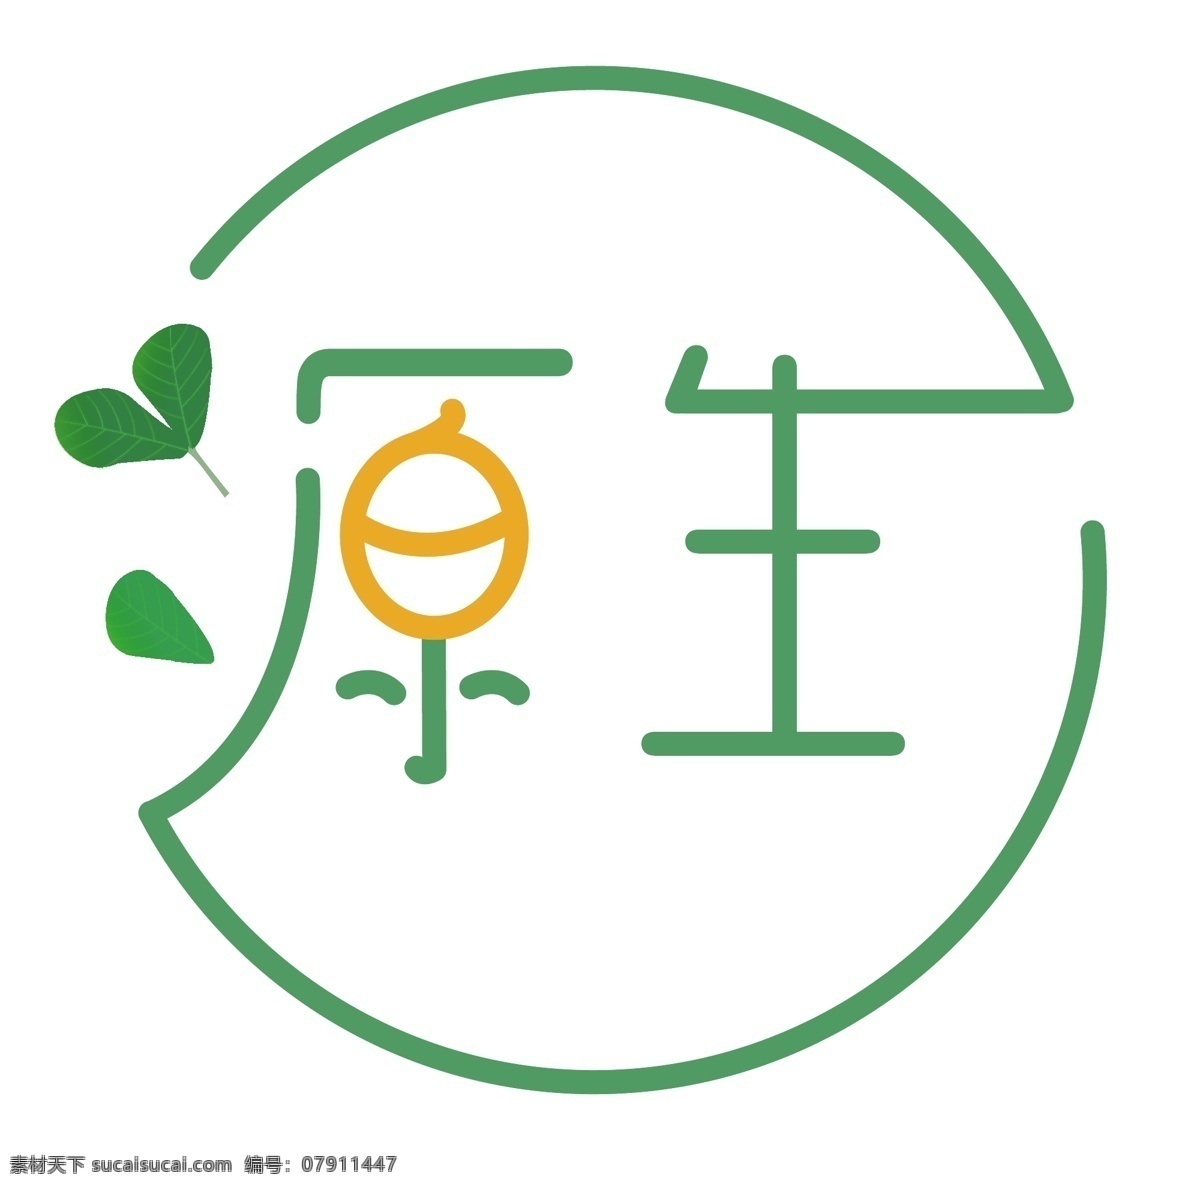 绿色产品 logo 农副产品 健康logo